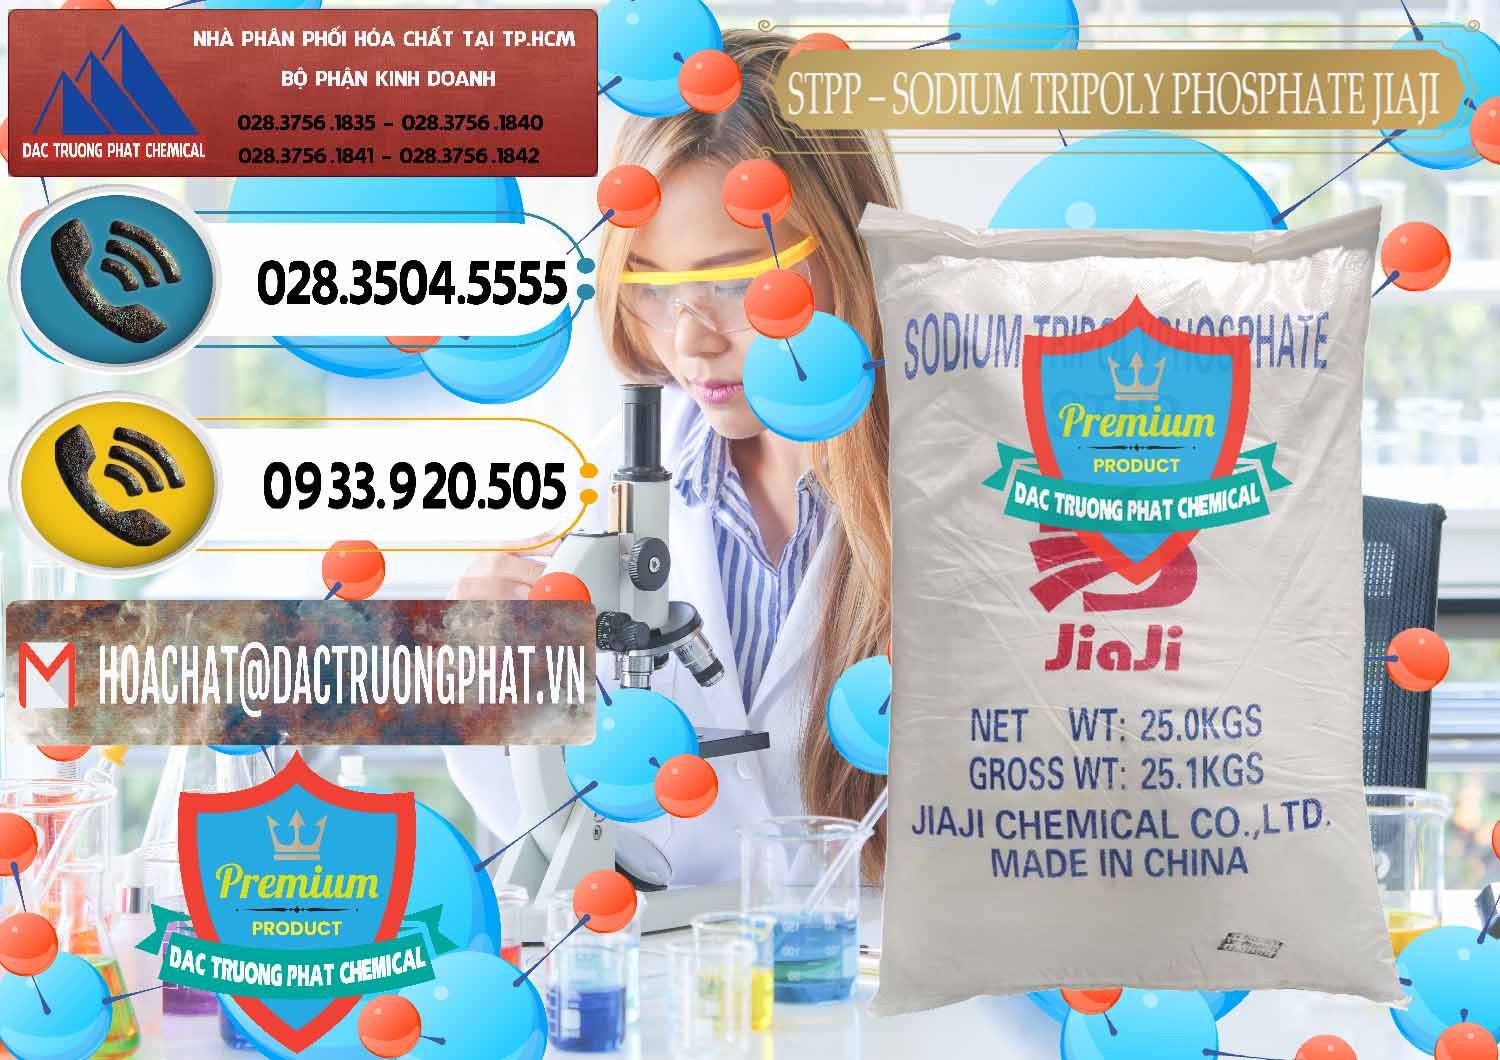 Cty bán và cung cấp Sodium Tripoly Phosphate - STPP Jiaji Trung Quốc China - 0154 - Công ty chuyên nhập khẩu - cung cấp hóa chất tại TP.HCM - hoachatdetnhuom.vn